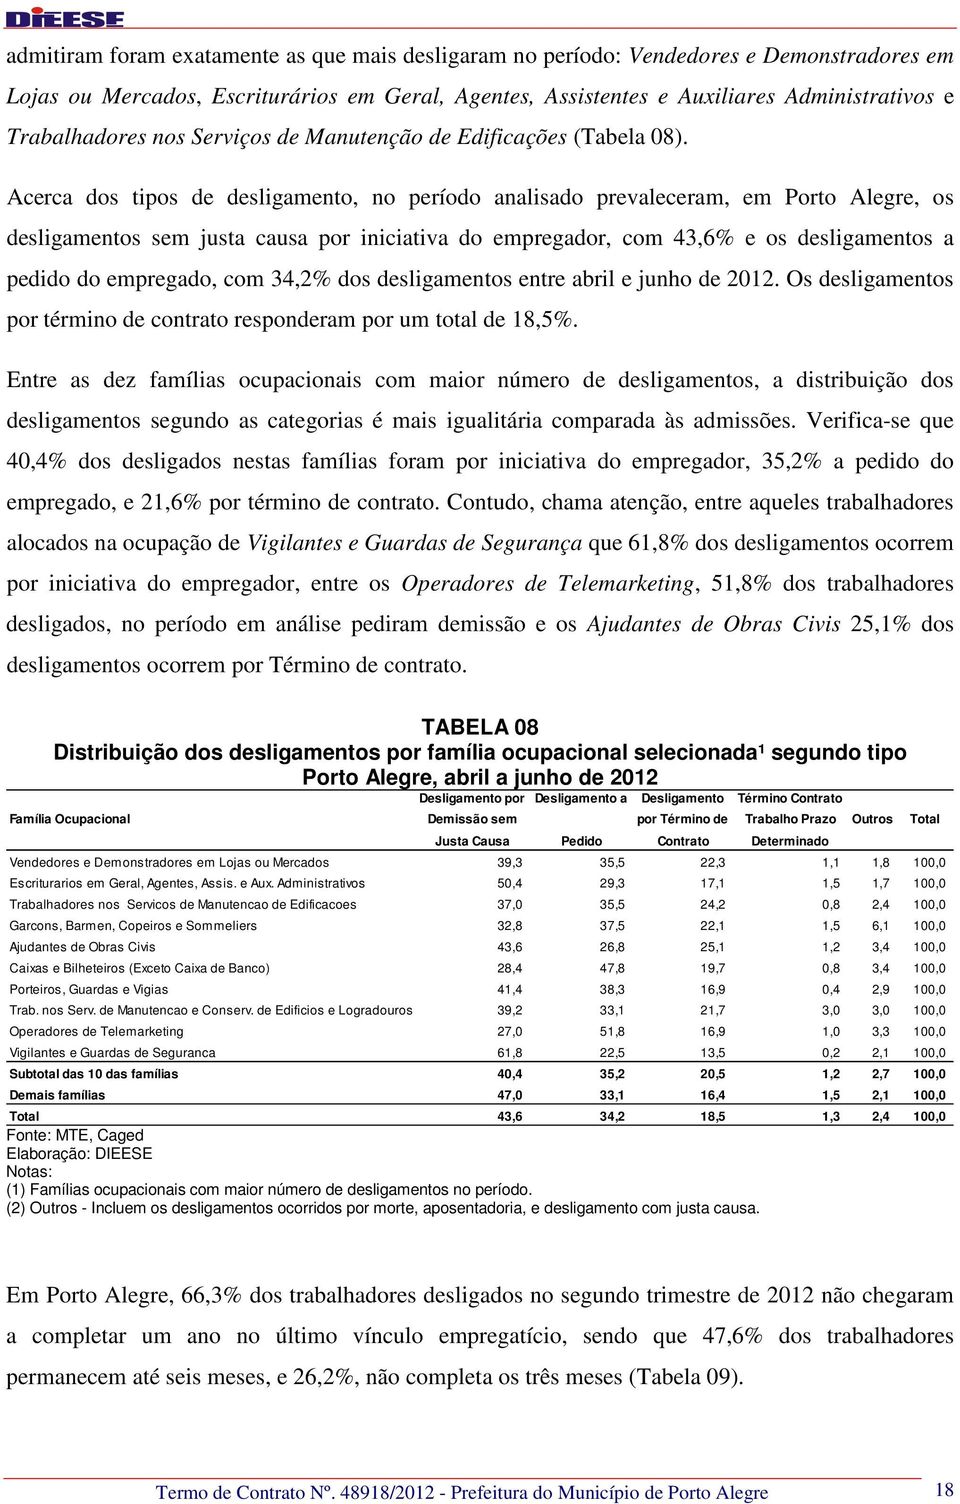 Acerca dos tipos de desligamento, no período analisado prevaleceram, em Porto Alegre, os desligamentos sem justa causa por iniciativa do empregador, com 43,6% e os desligamentos a pedido do